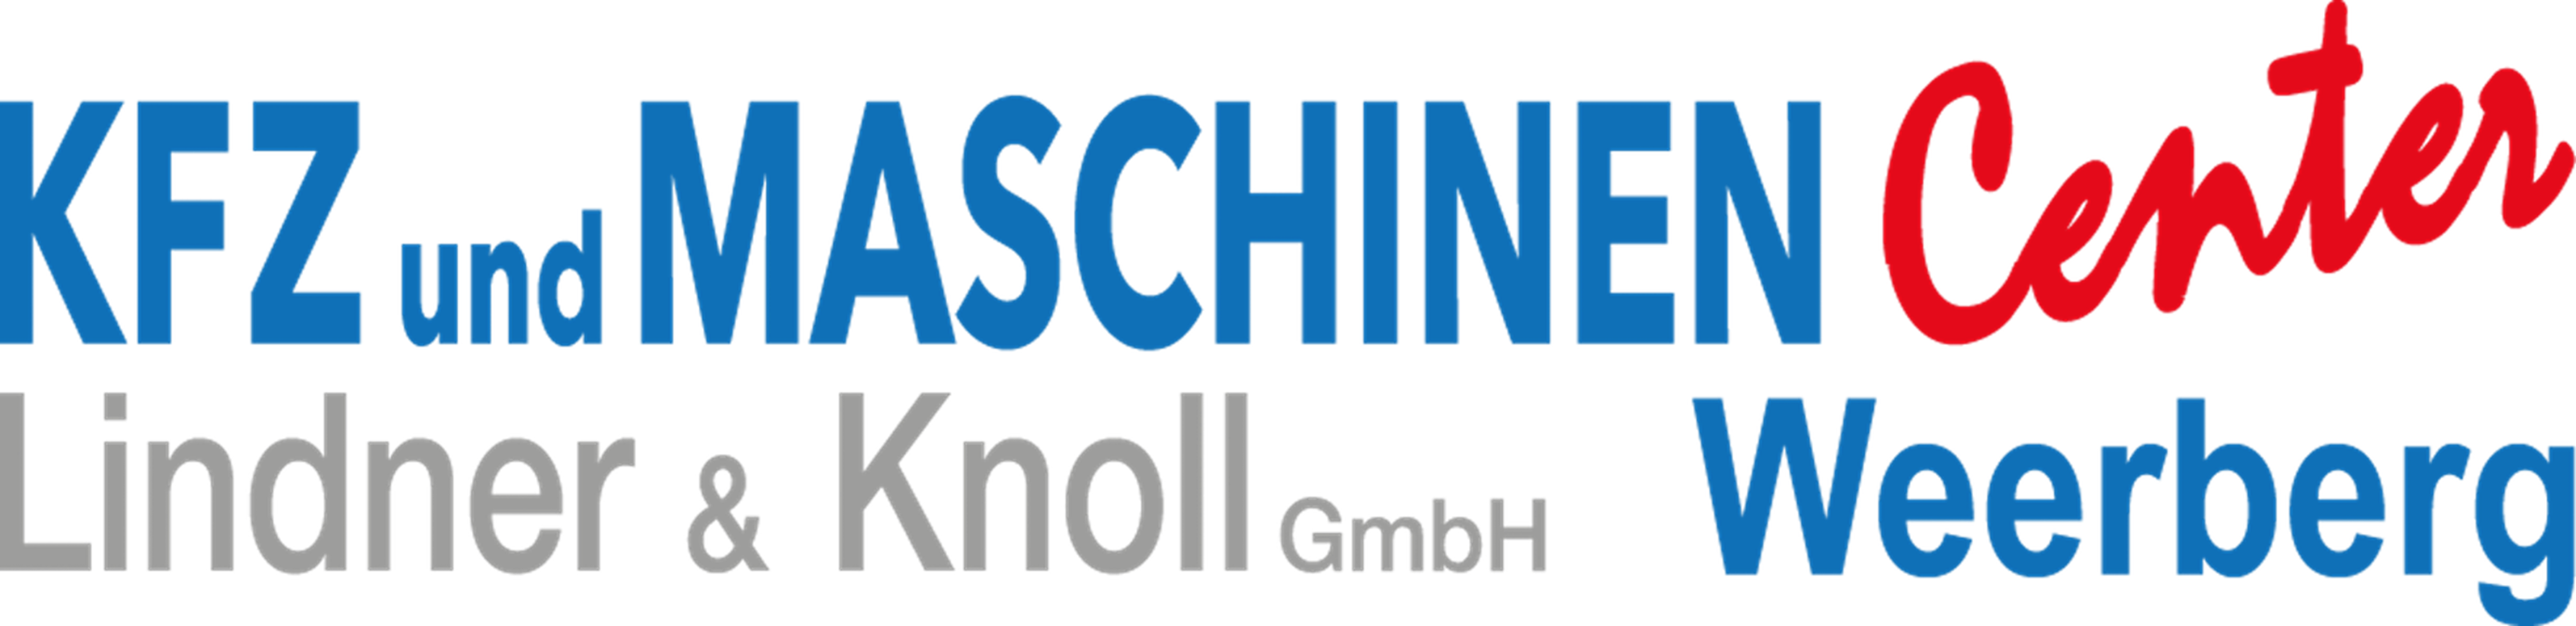 Lindner & Knoll GmbH